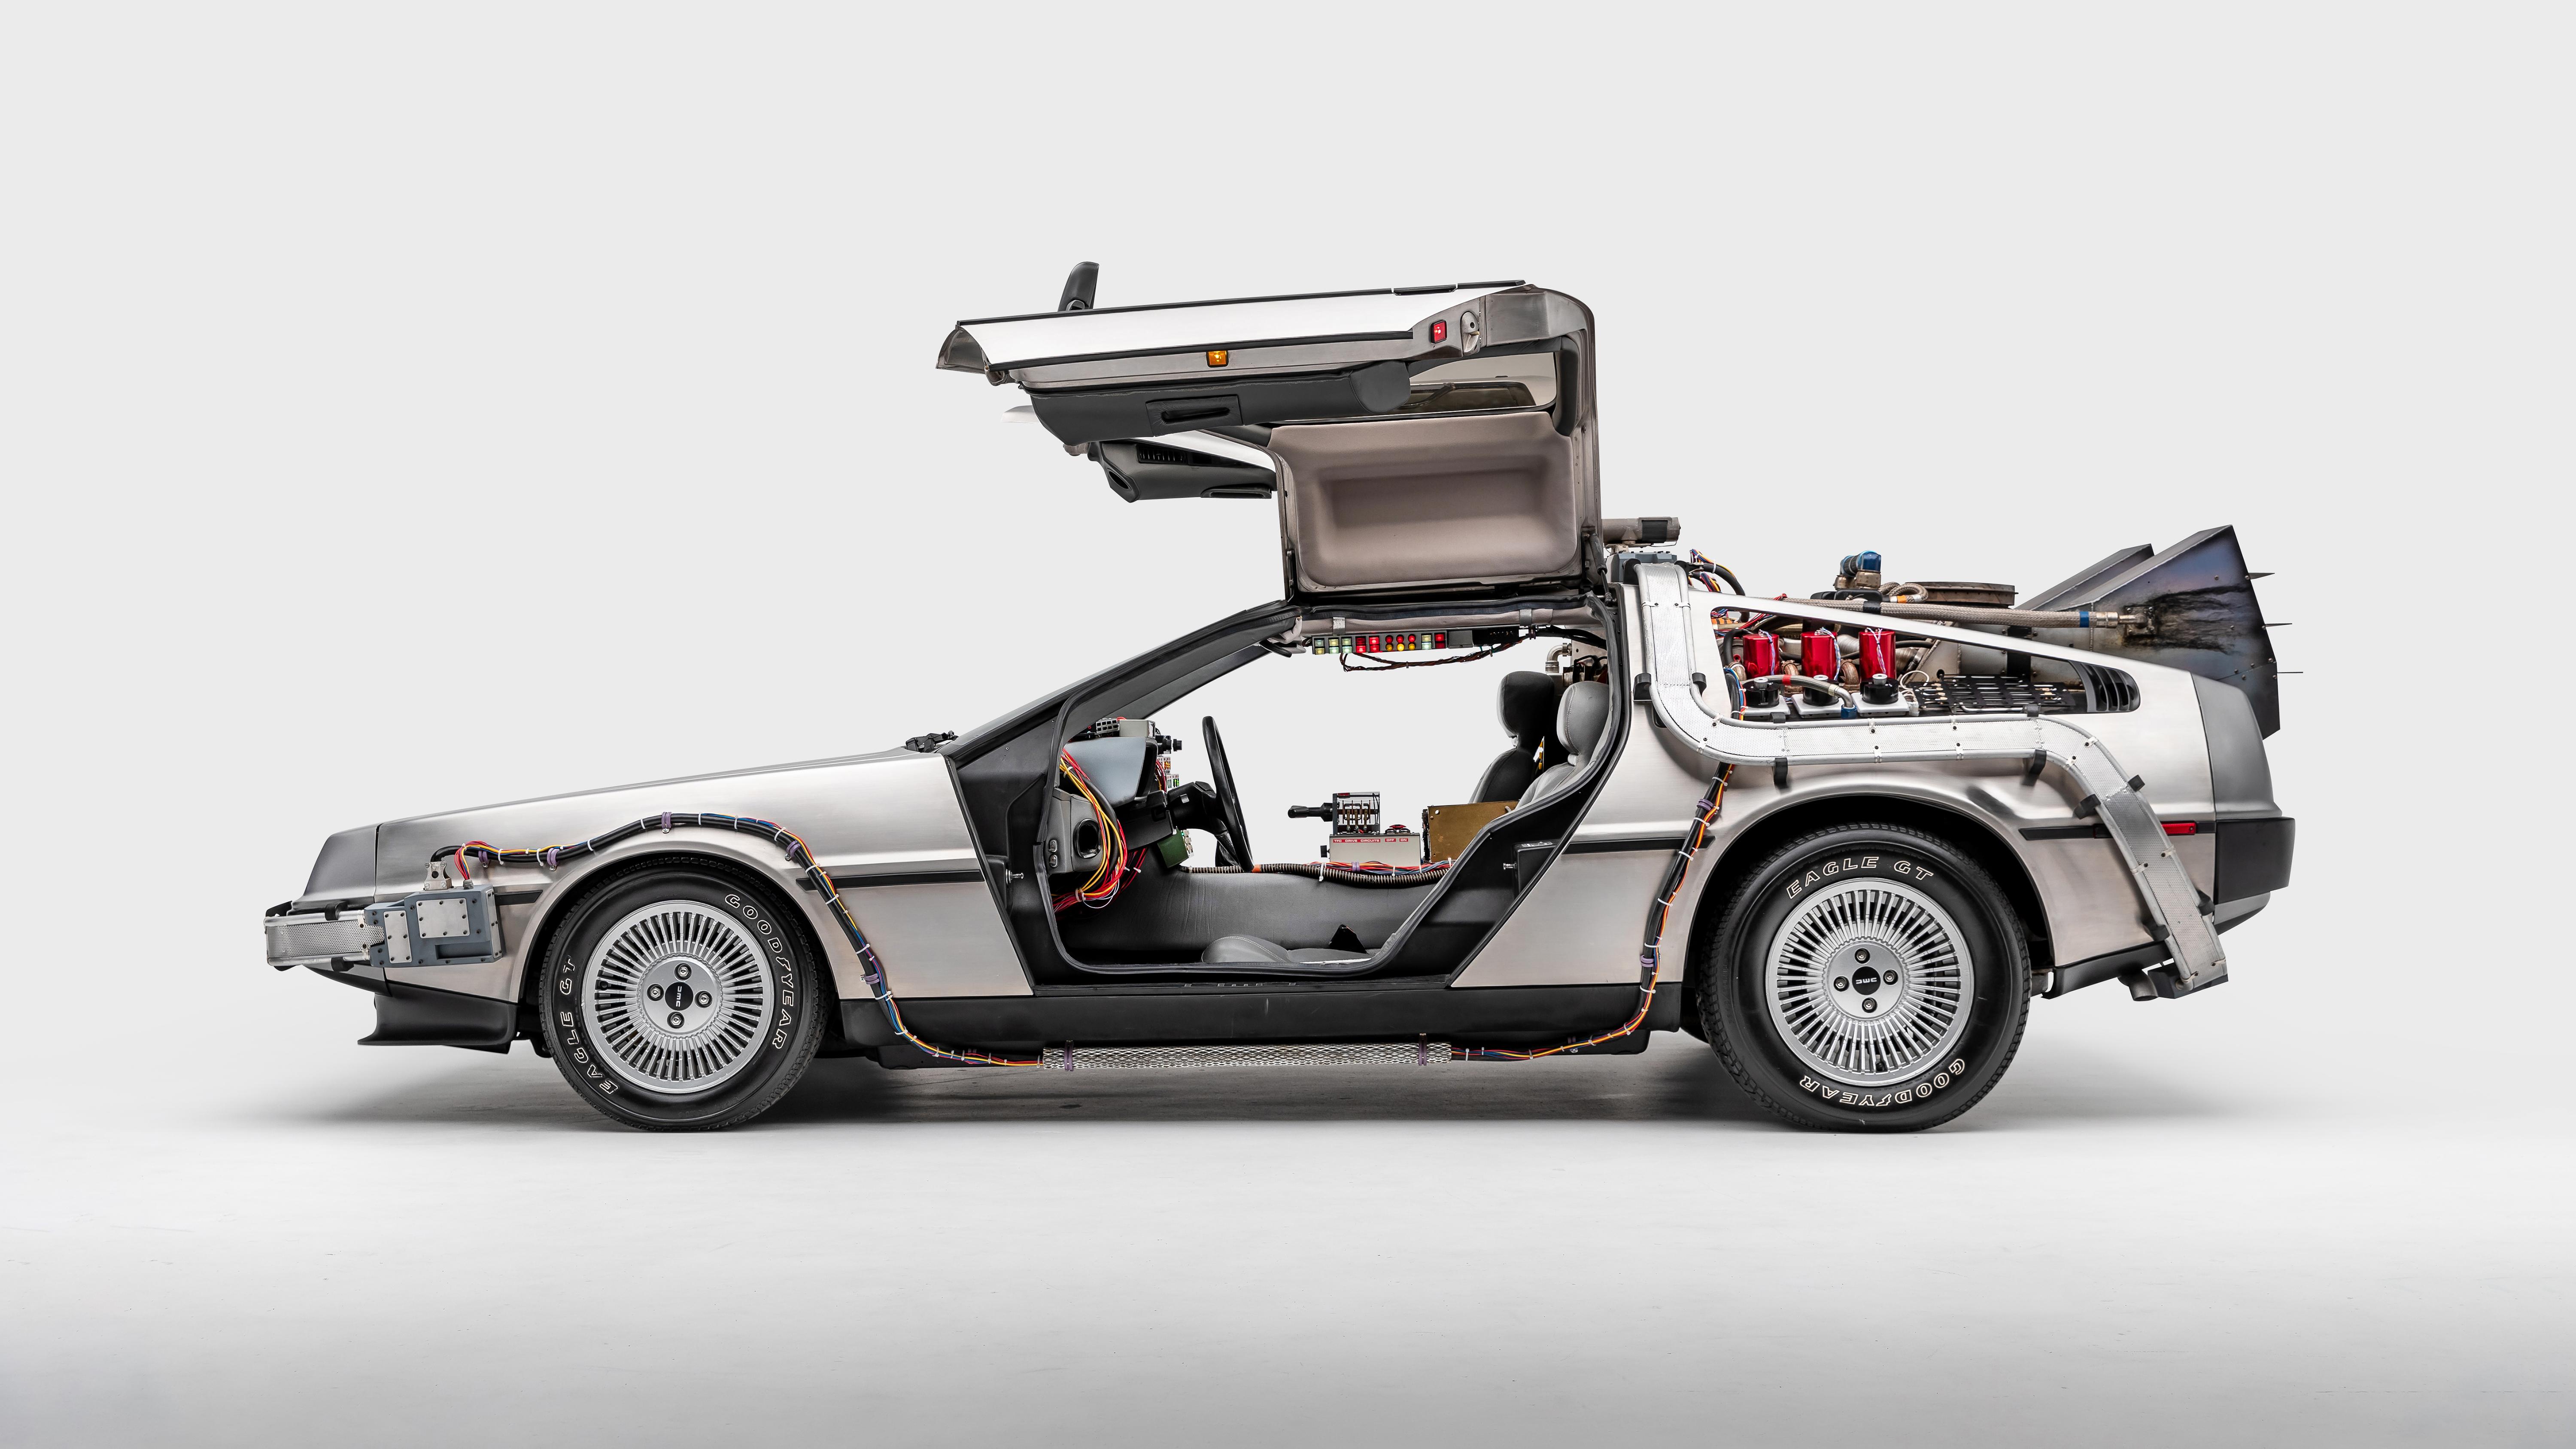 DeLorean DMC 12 Back to the Future 4K Wallpaper   HD Car